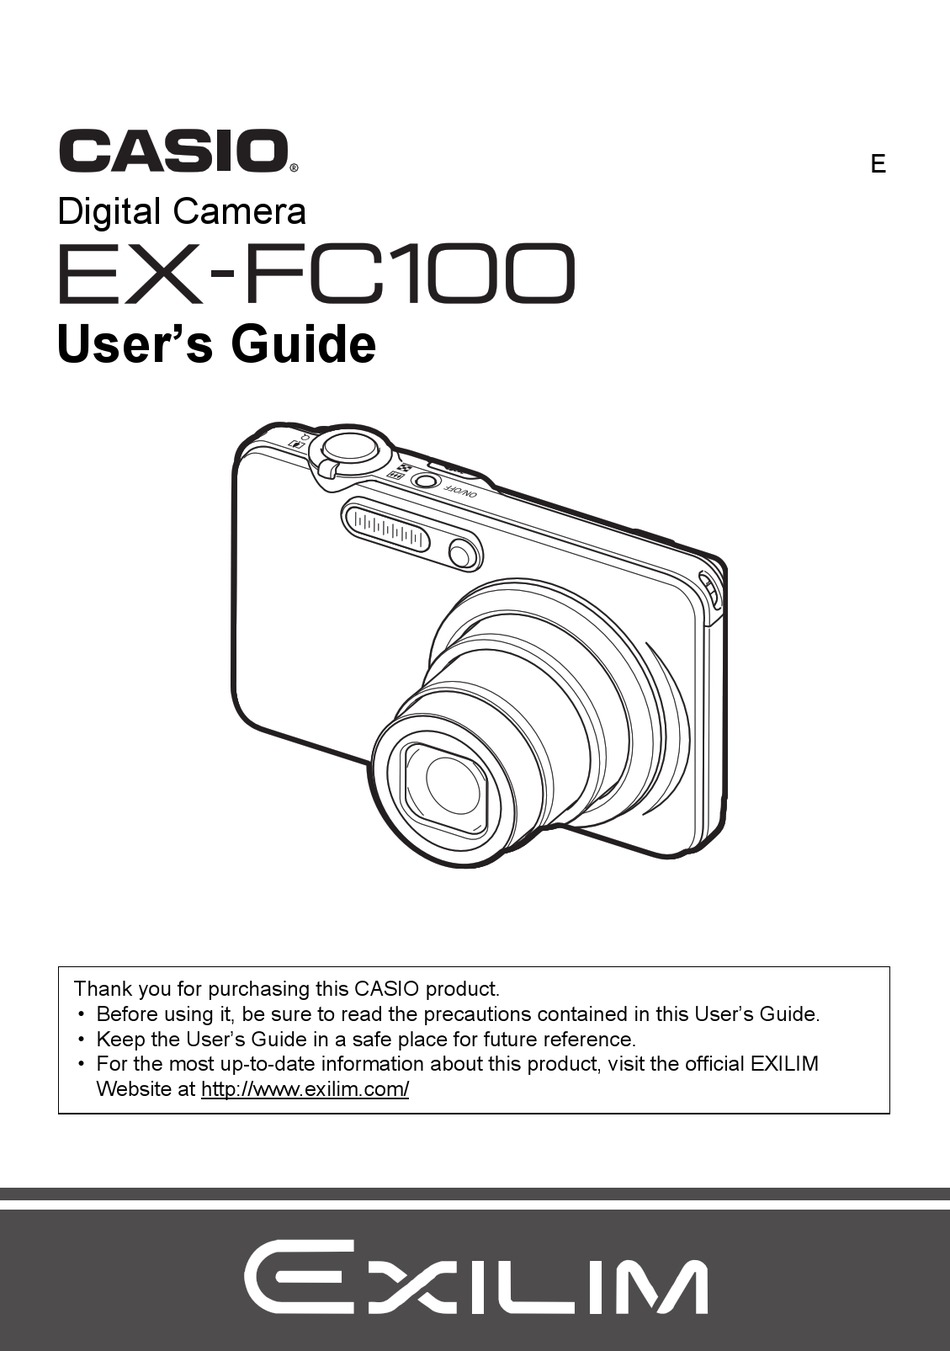 32gb SDHC para Casio Exilim ex-fc100